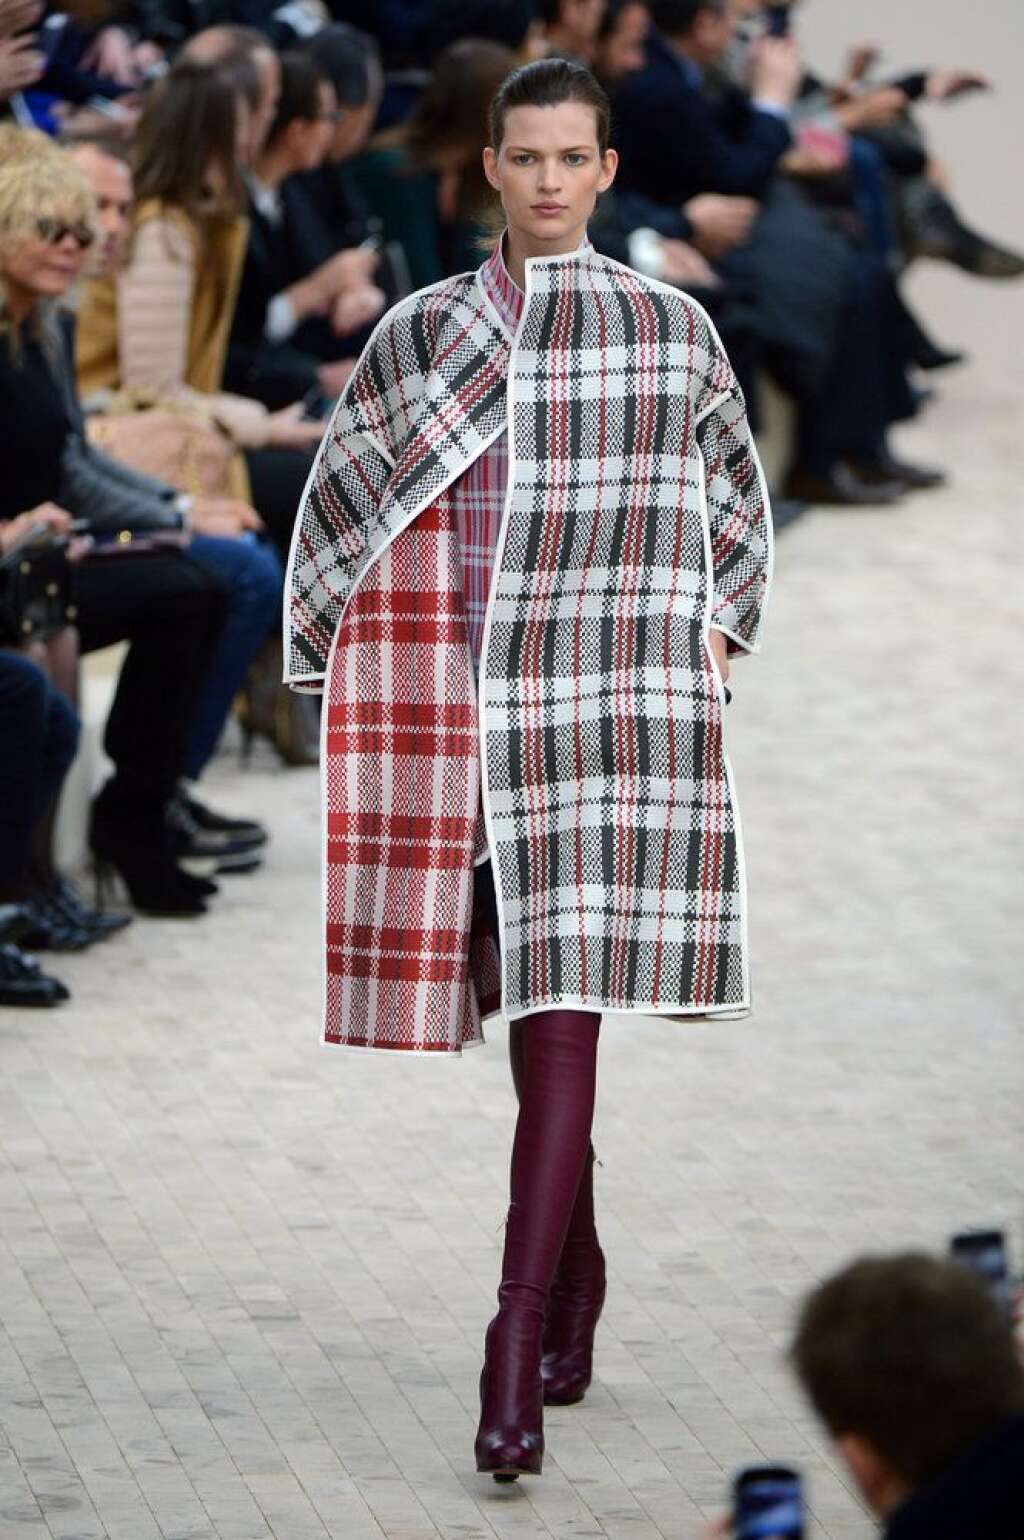 L'écossais 2013 - 2014  du défilé Céline - Certes, le manteau Céline ressemble à un cabas pour faire les courses. Mais remarquez, le top porté dessous. On vous le dit, l'écossais revient.